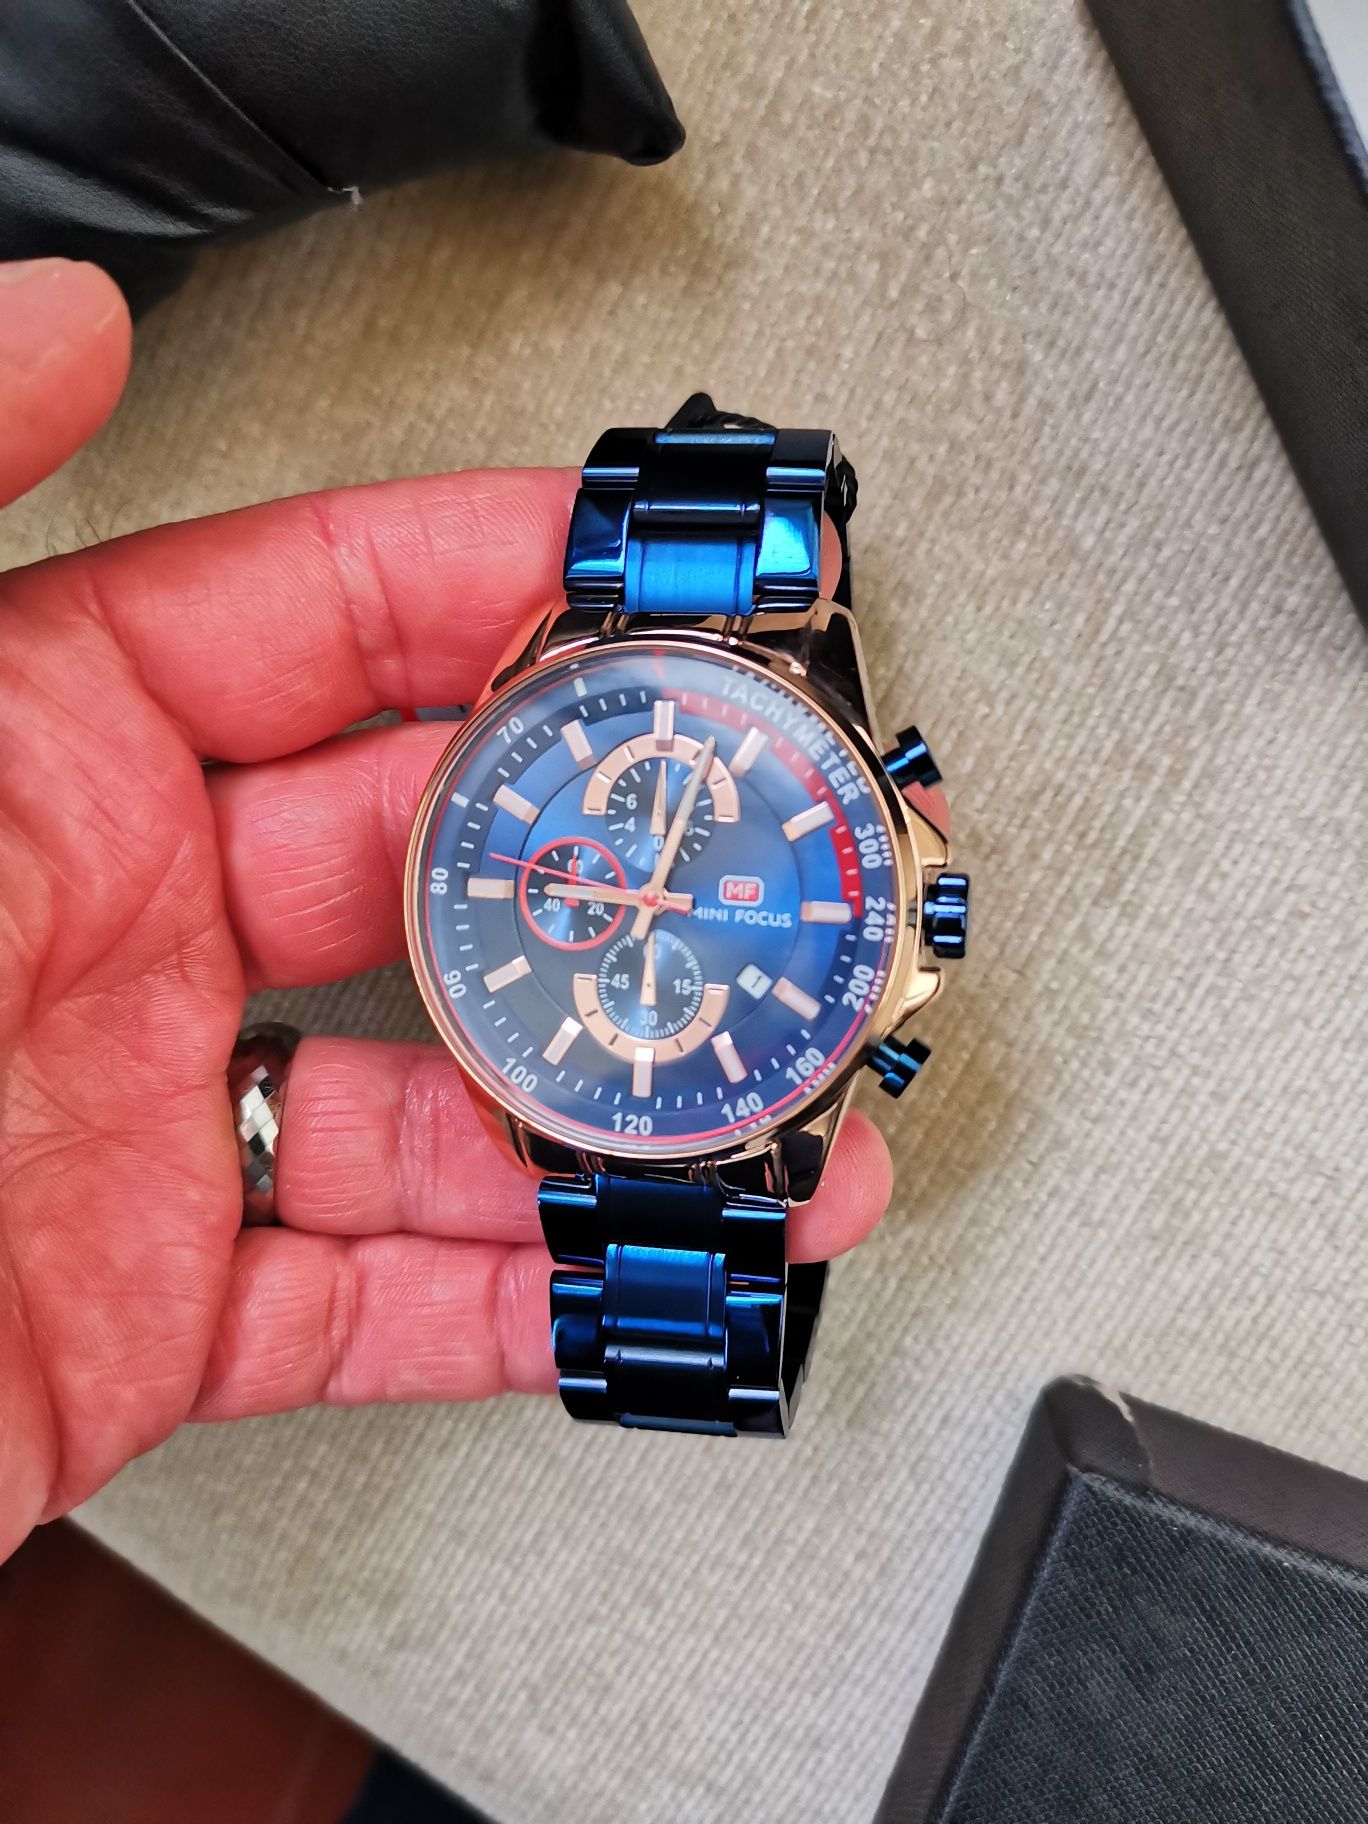 Relógio de Luxo está novo, com Cronógrafo, á prova de água, etc.